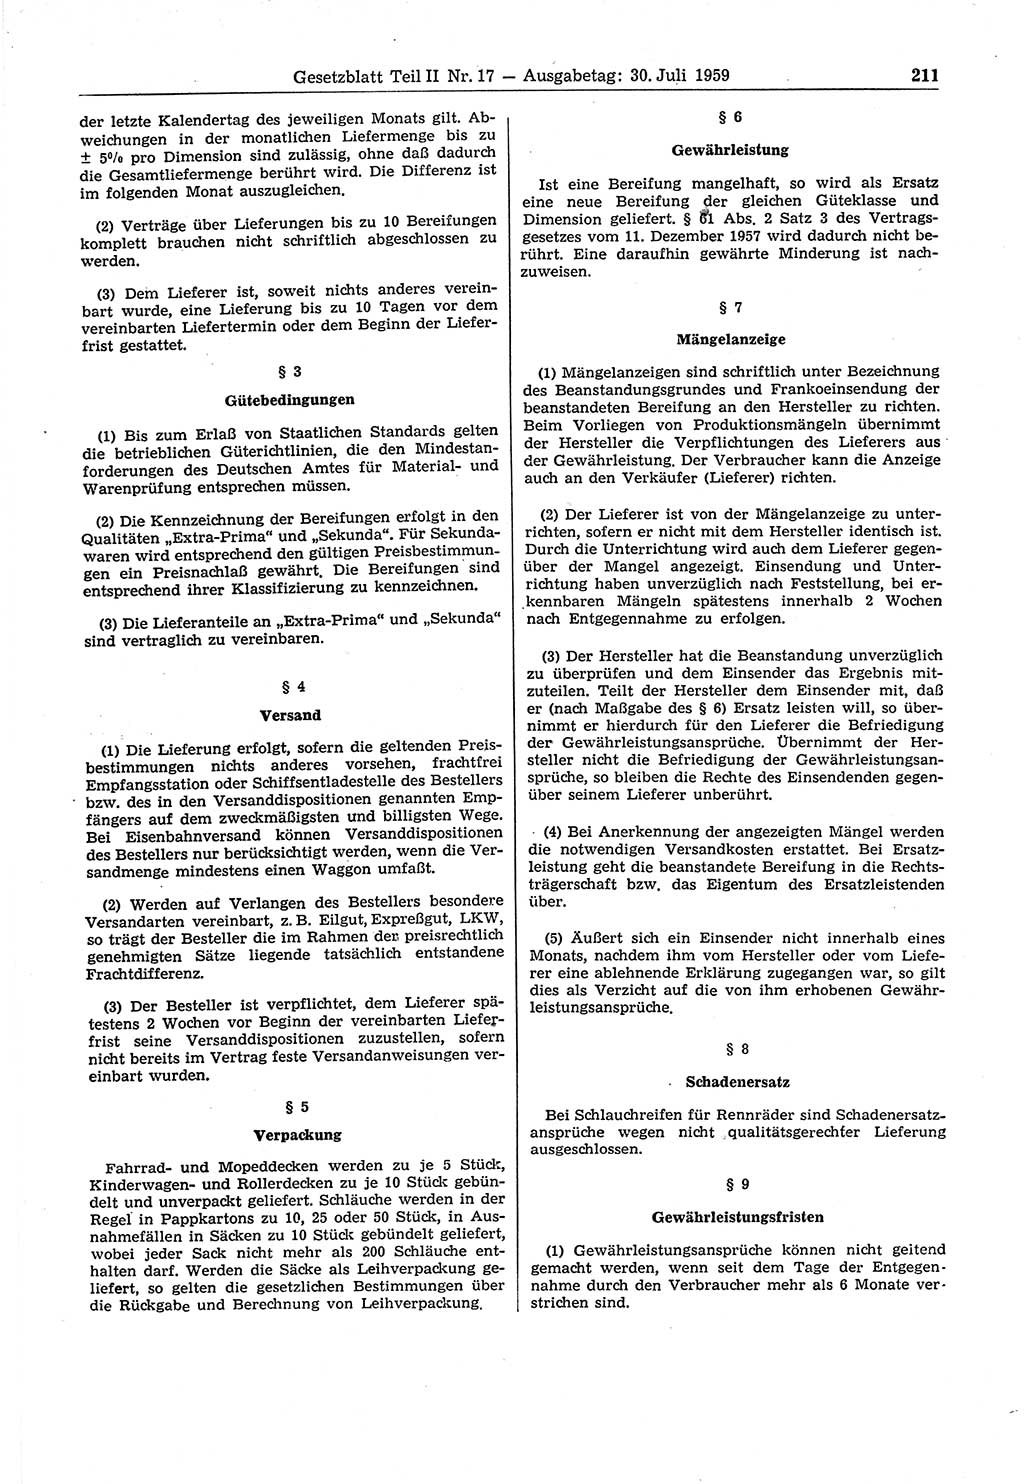 Gesetzblatt (GBl.) der Deutschen Demokratischen Republik (DDR) Teil ⅠⅠ 1959, Seite 211 (GBl. DDR ⅠⅠ 1959, S. 211)